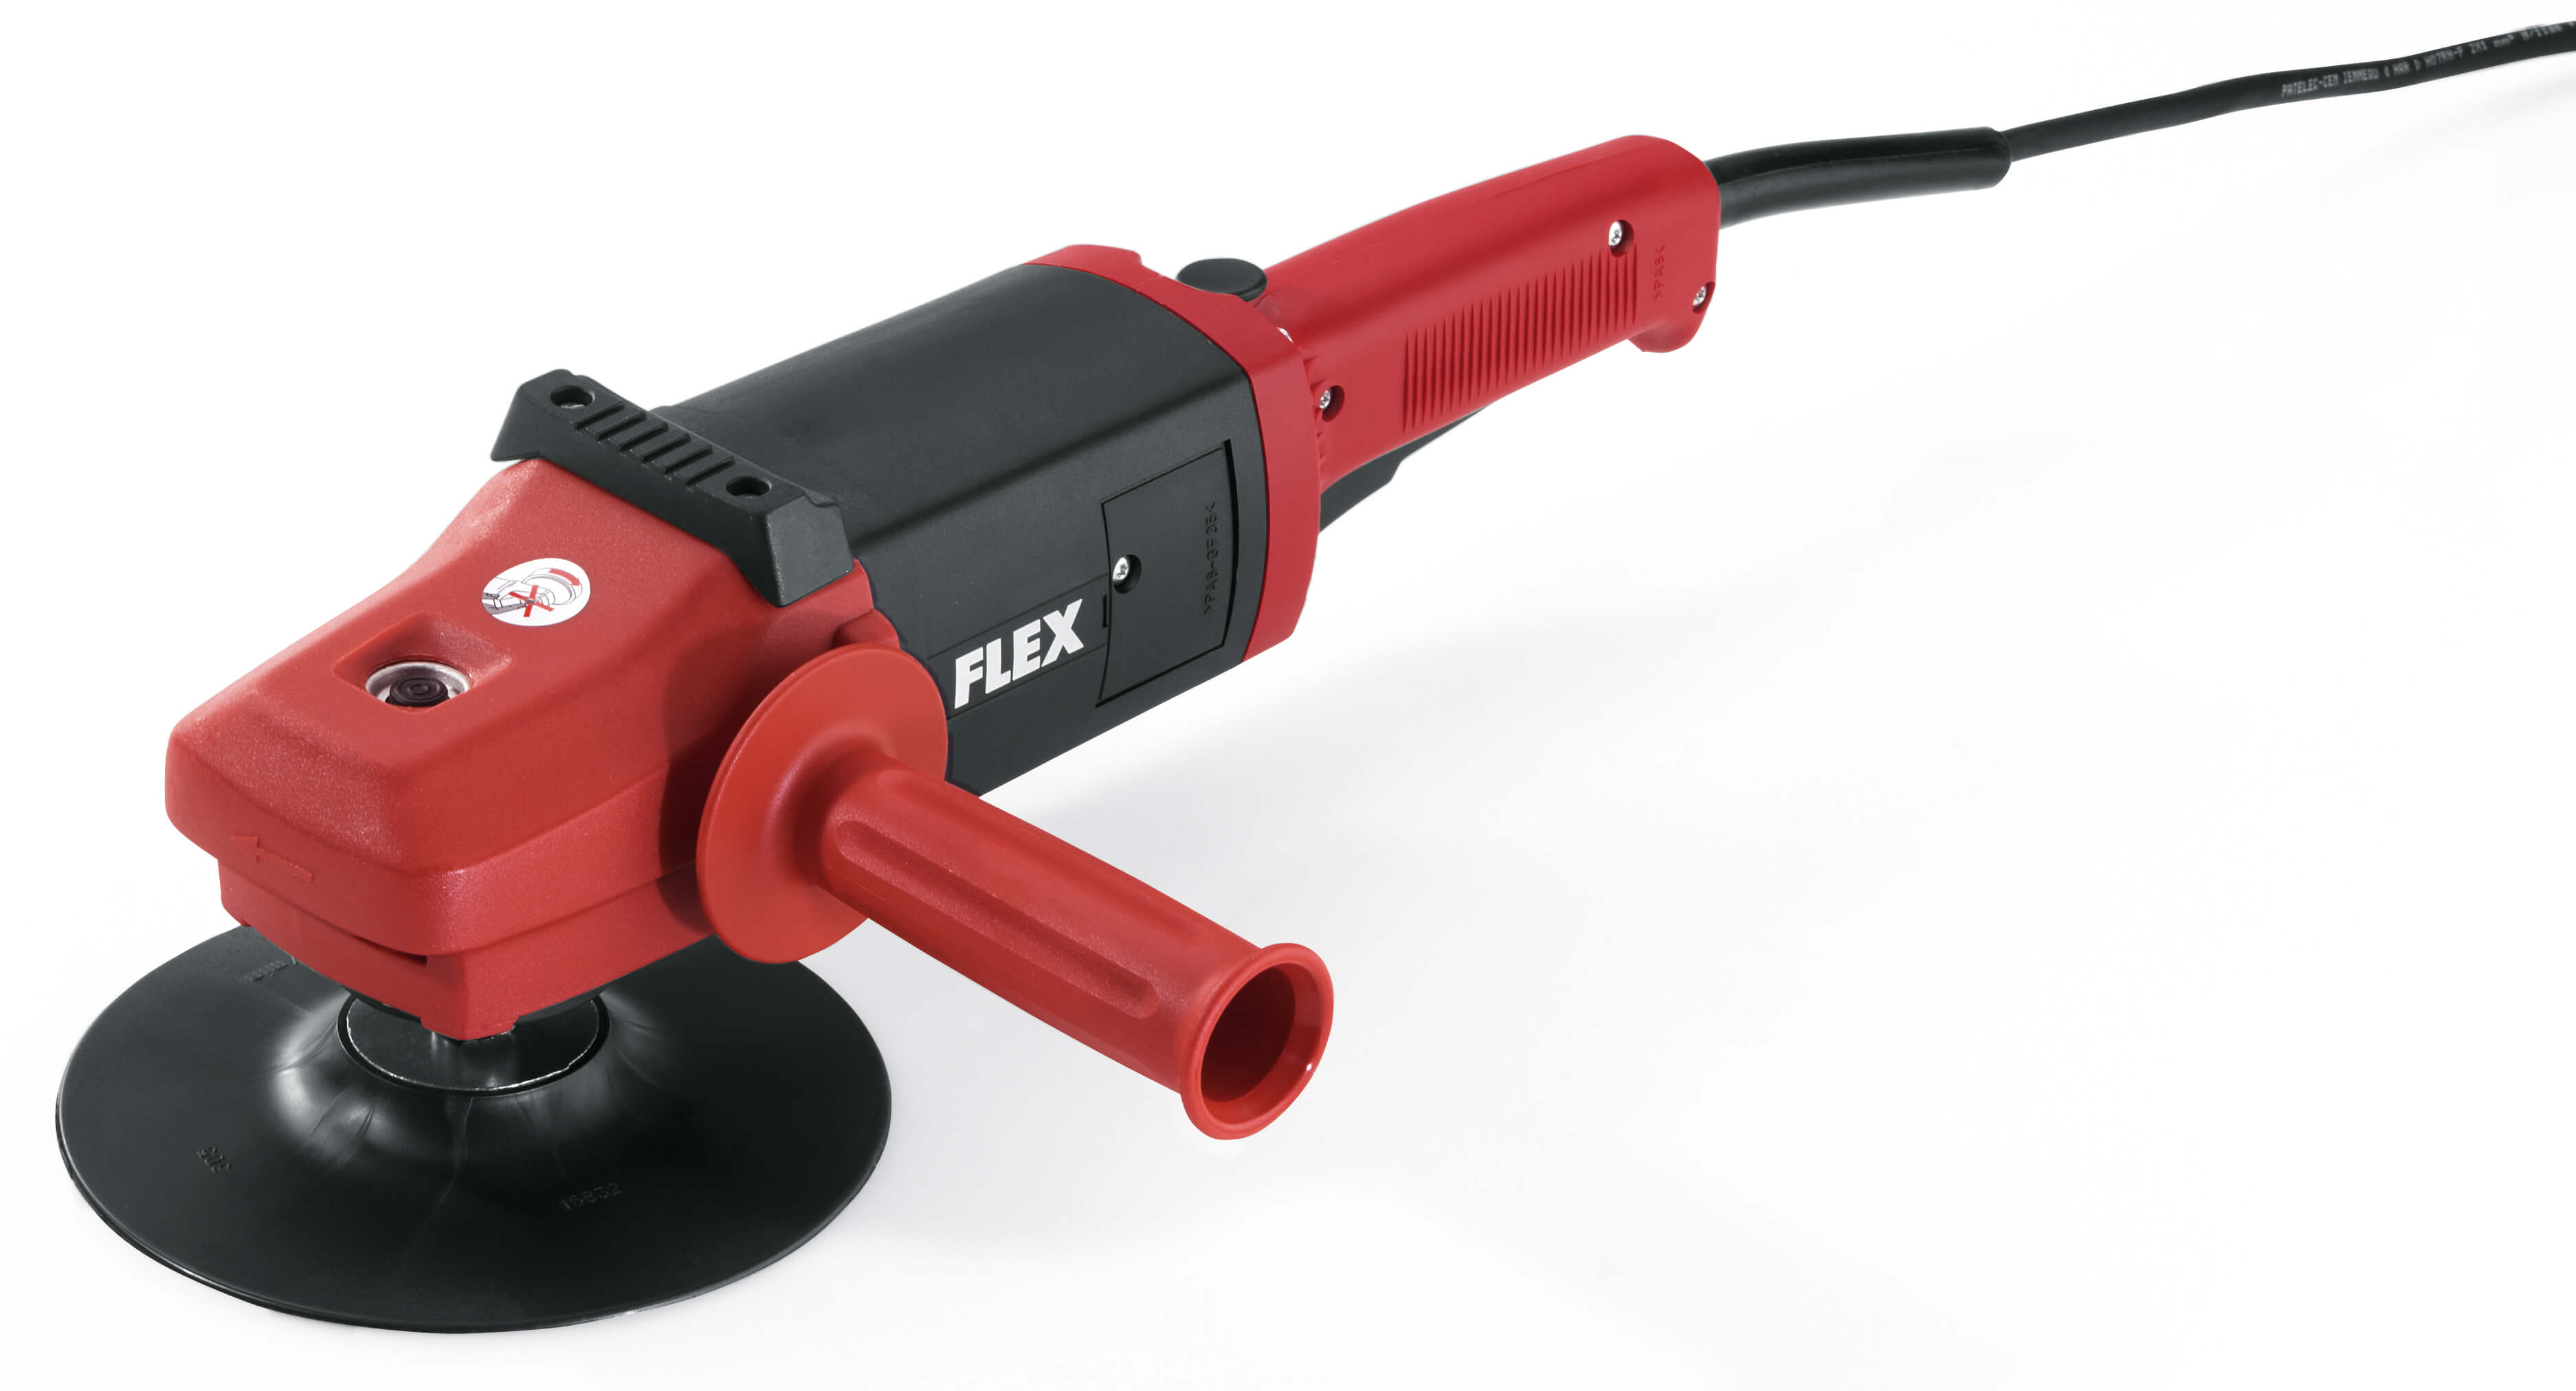 Flex 1200 Watt Schleifer ohne Absaugung, 175 mm